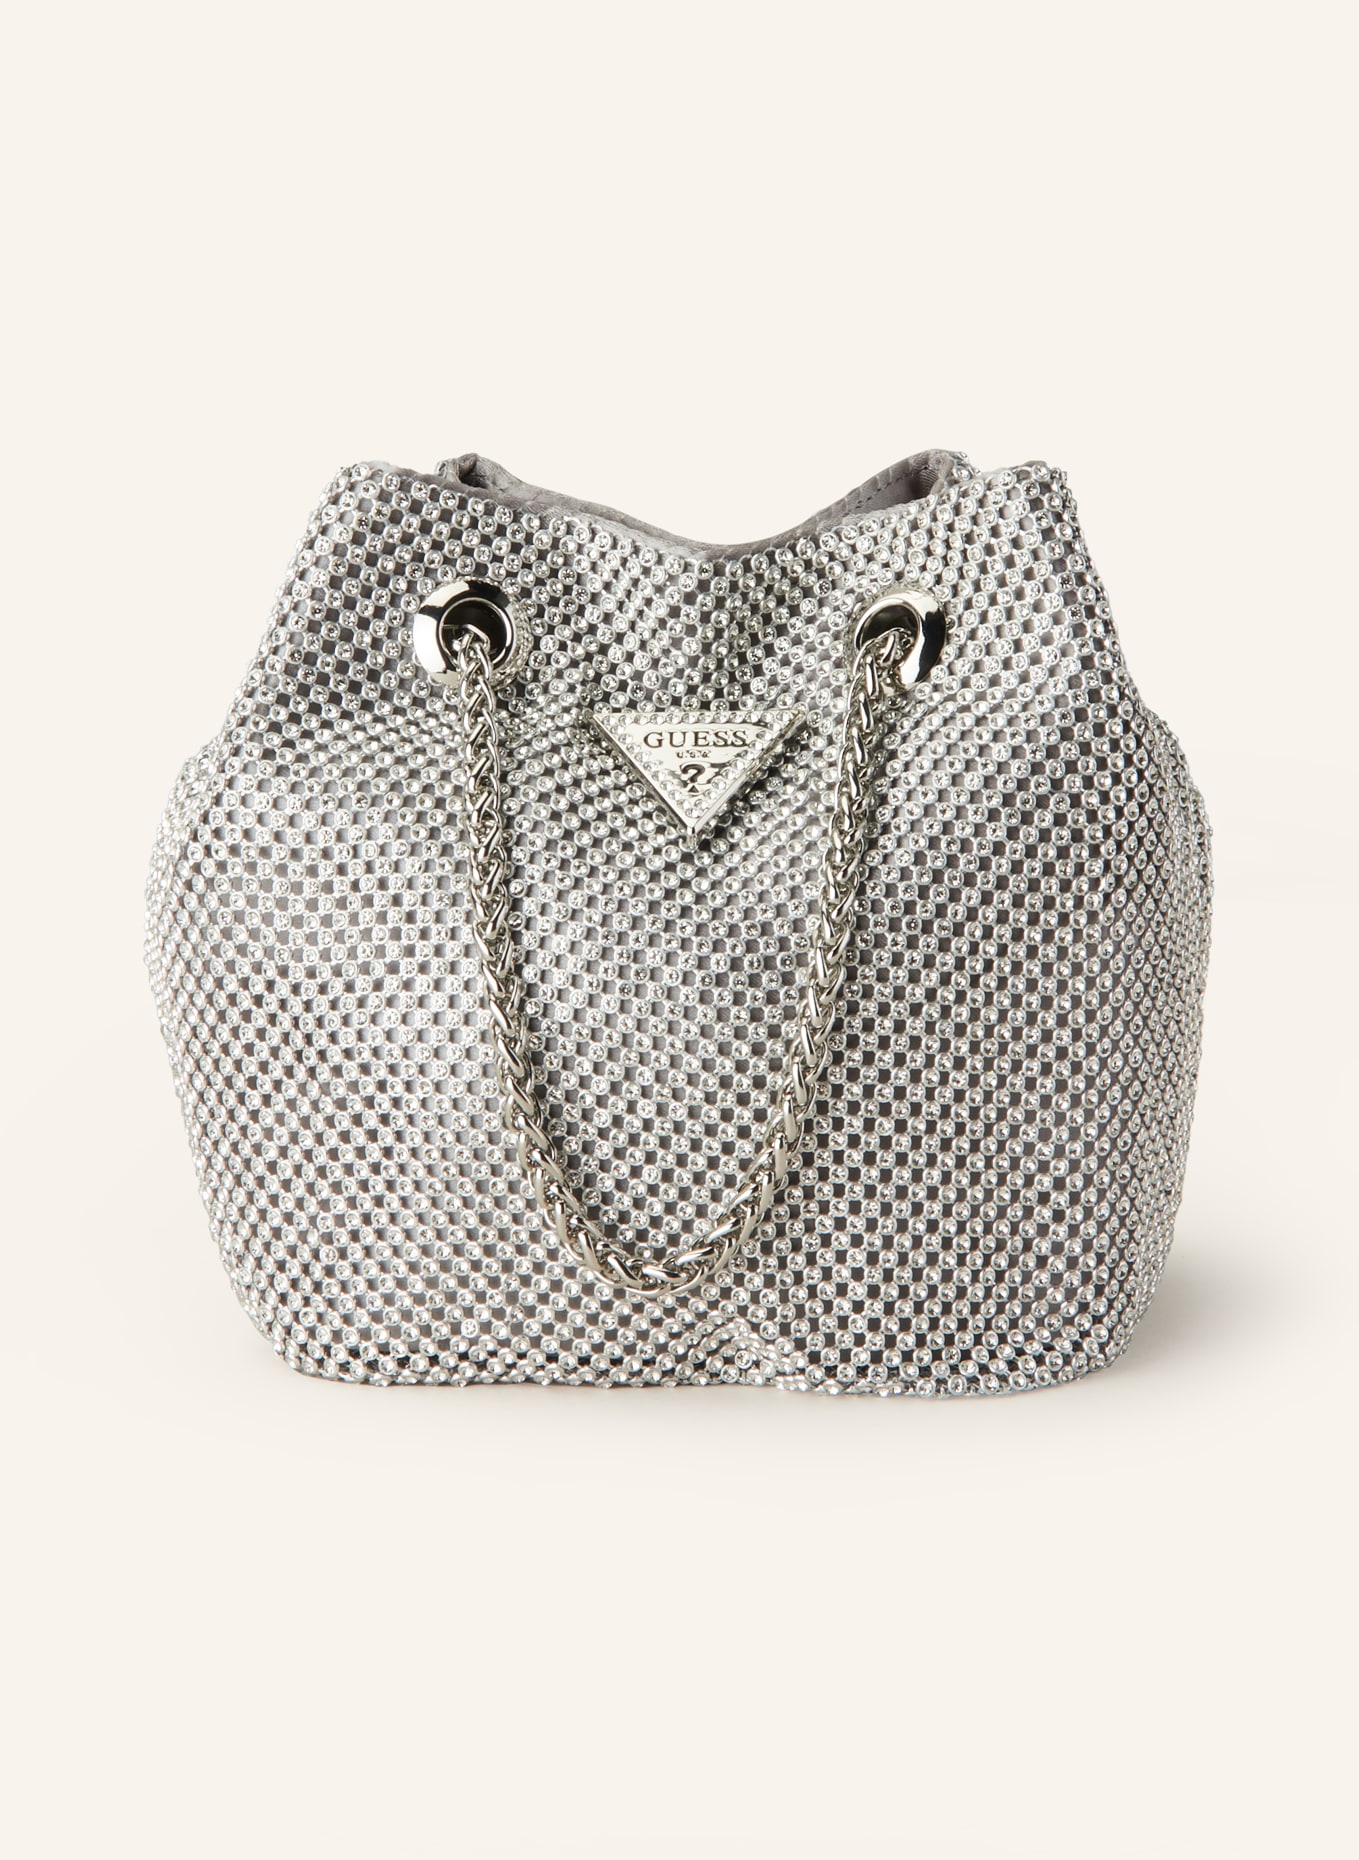 Guess Tote Shoulder Handbag Purse Large Silver Hardware Vintage GUC | eBay